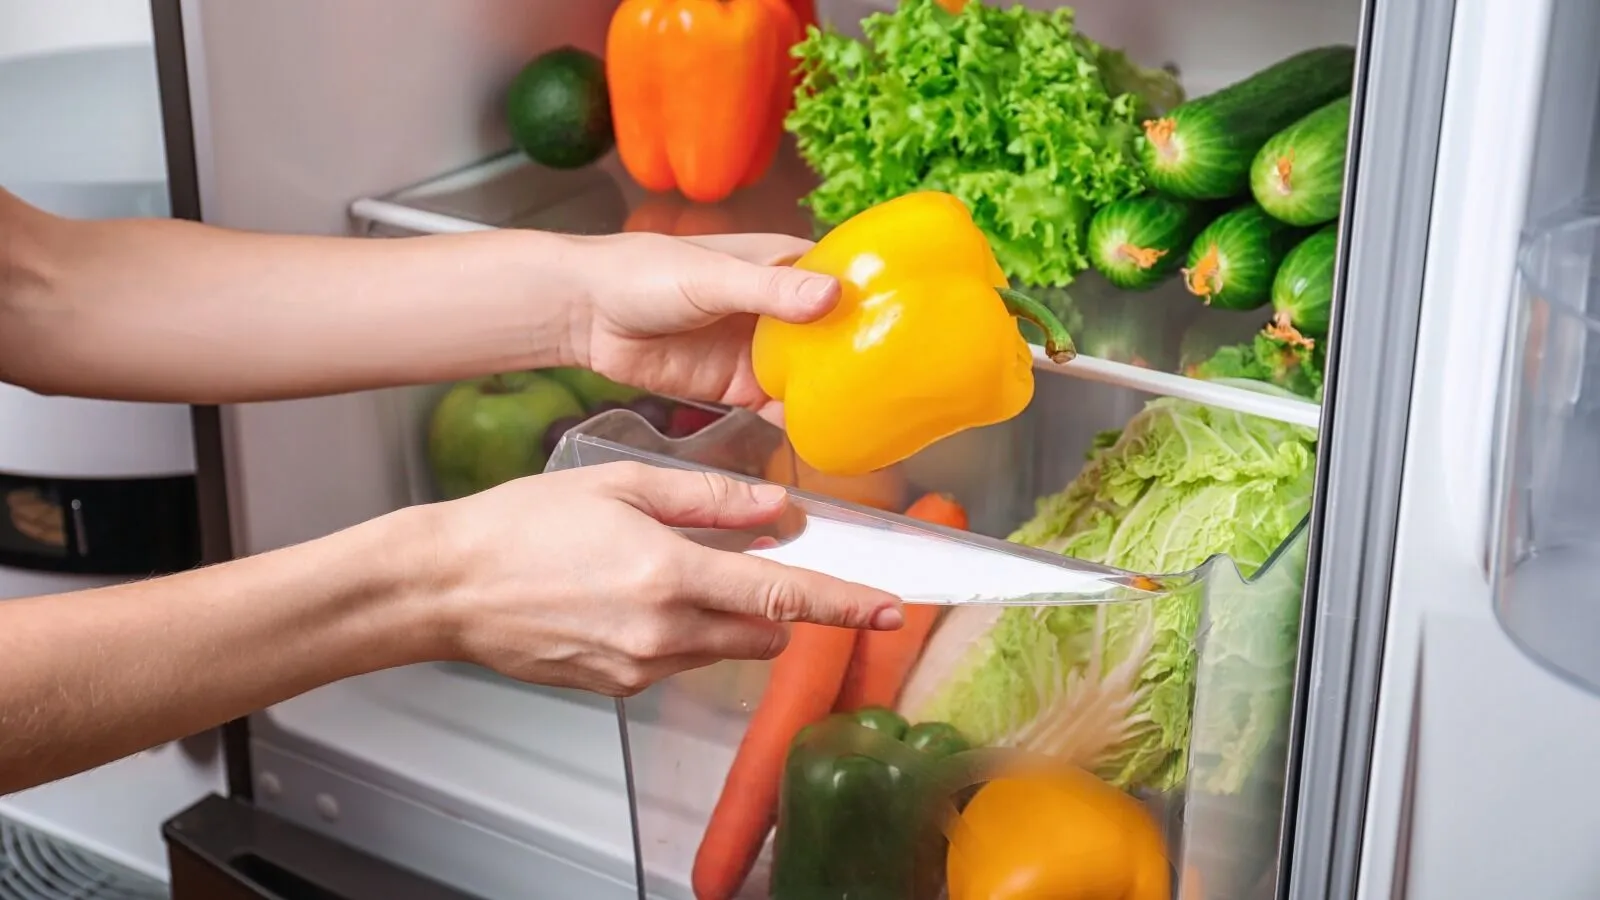 Як не можна користуватись холодильником, коли часто вимикають світло: дієві поради